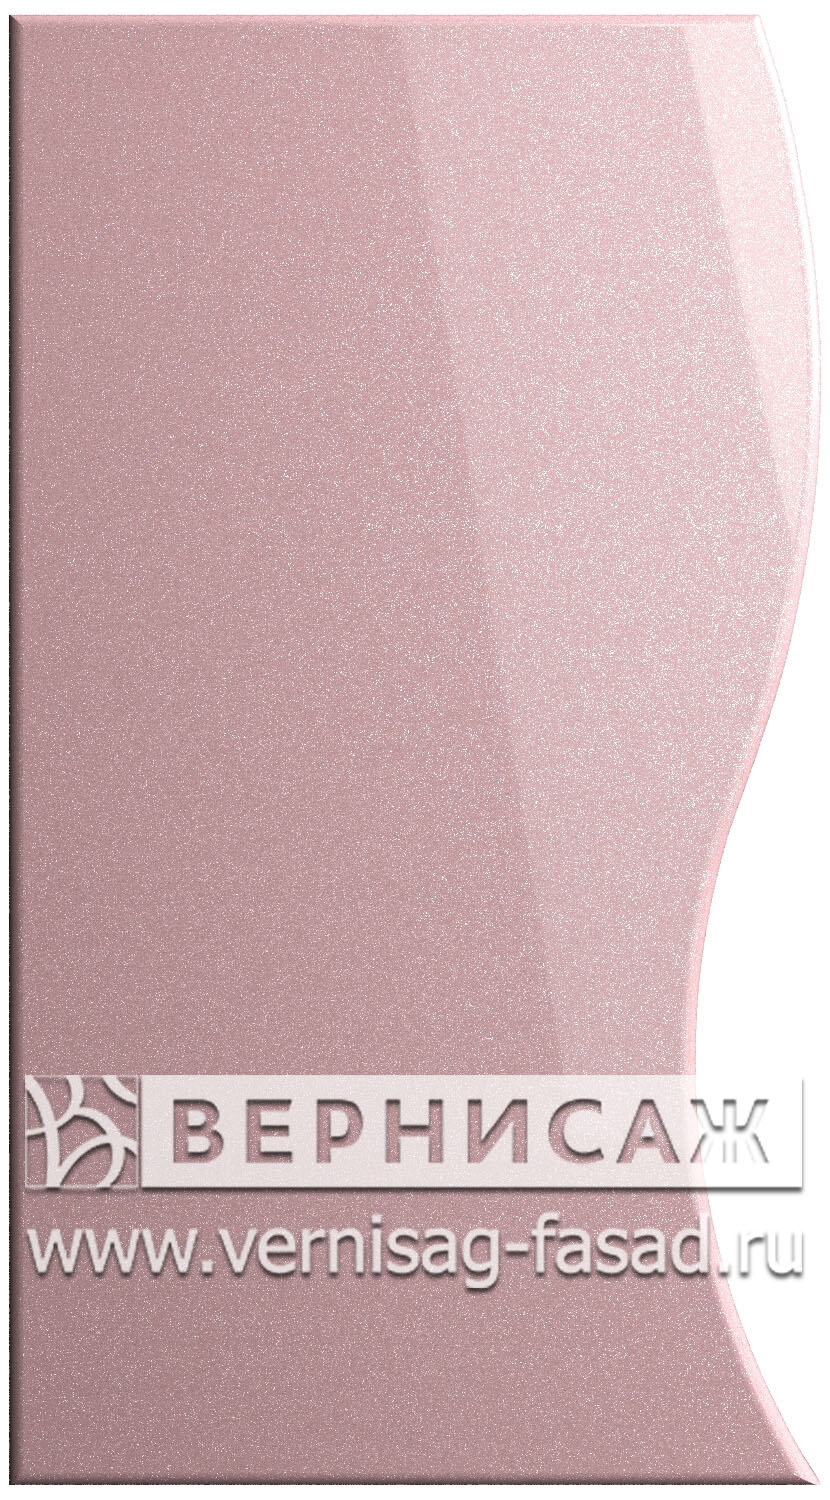 Фасады в пленке ПВХ, Фрезеровка № 22, цвет Розовый металлик